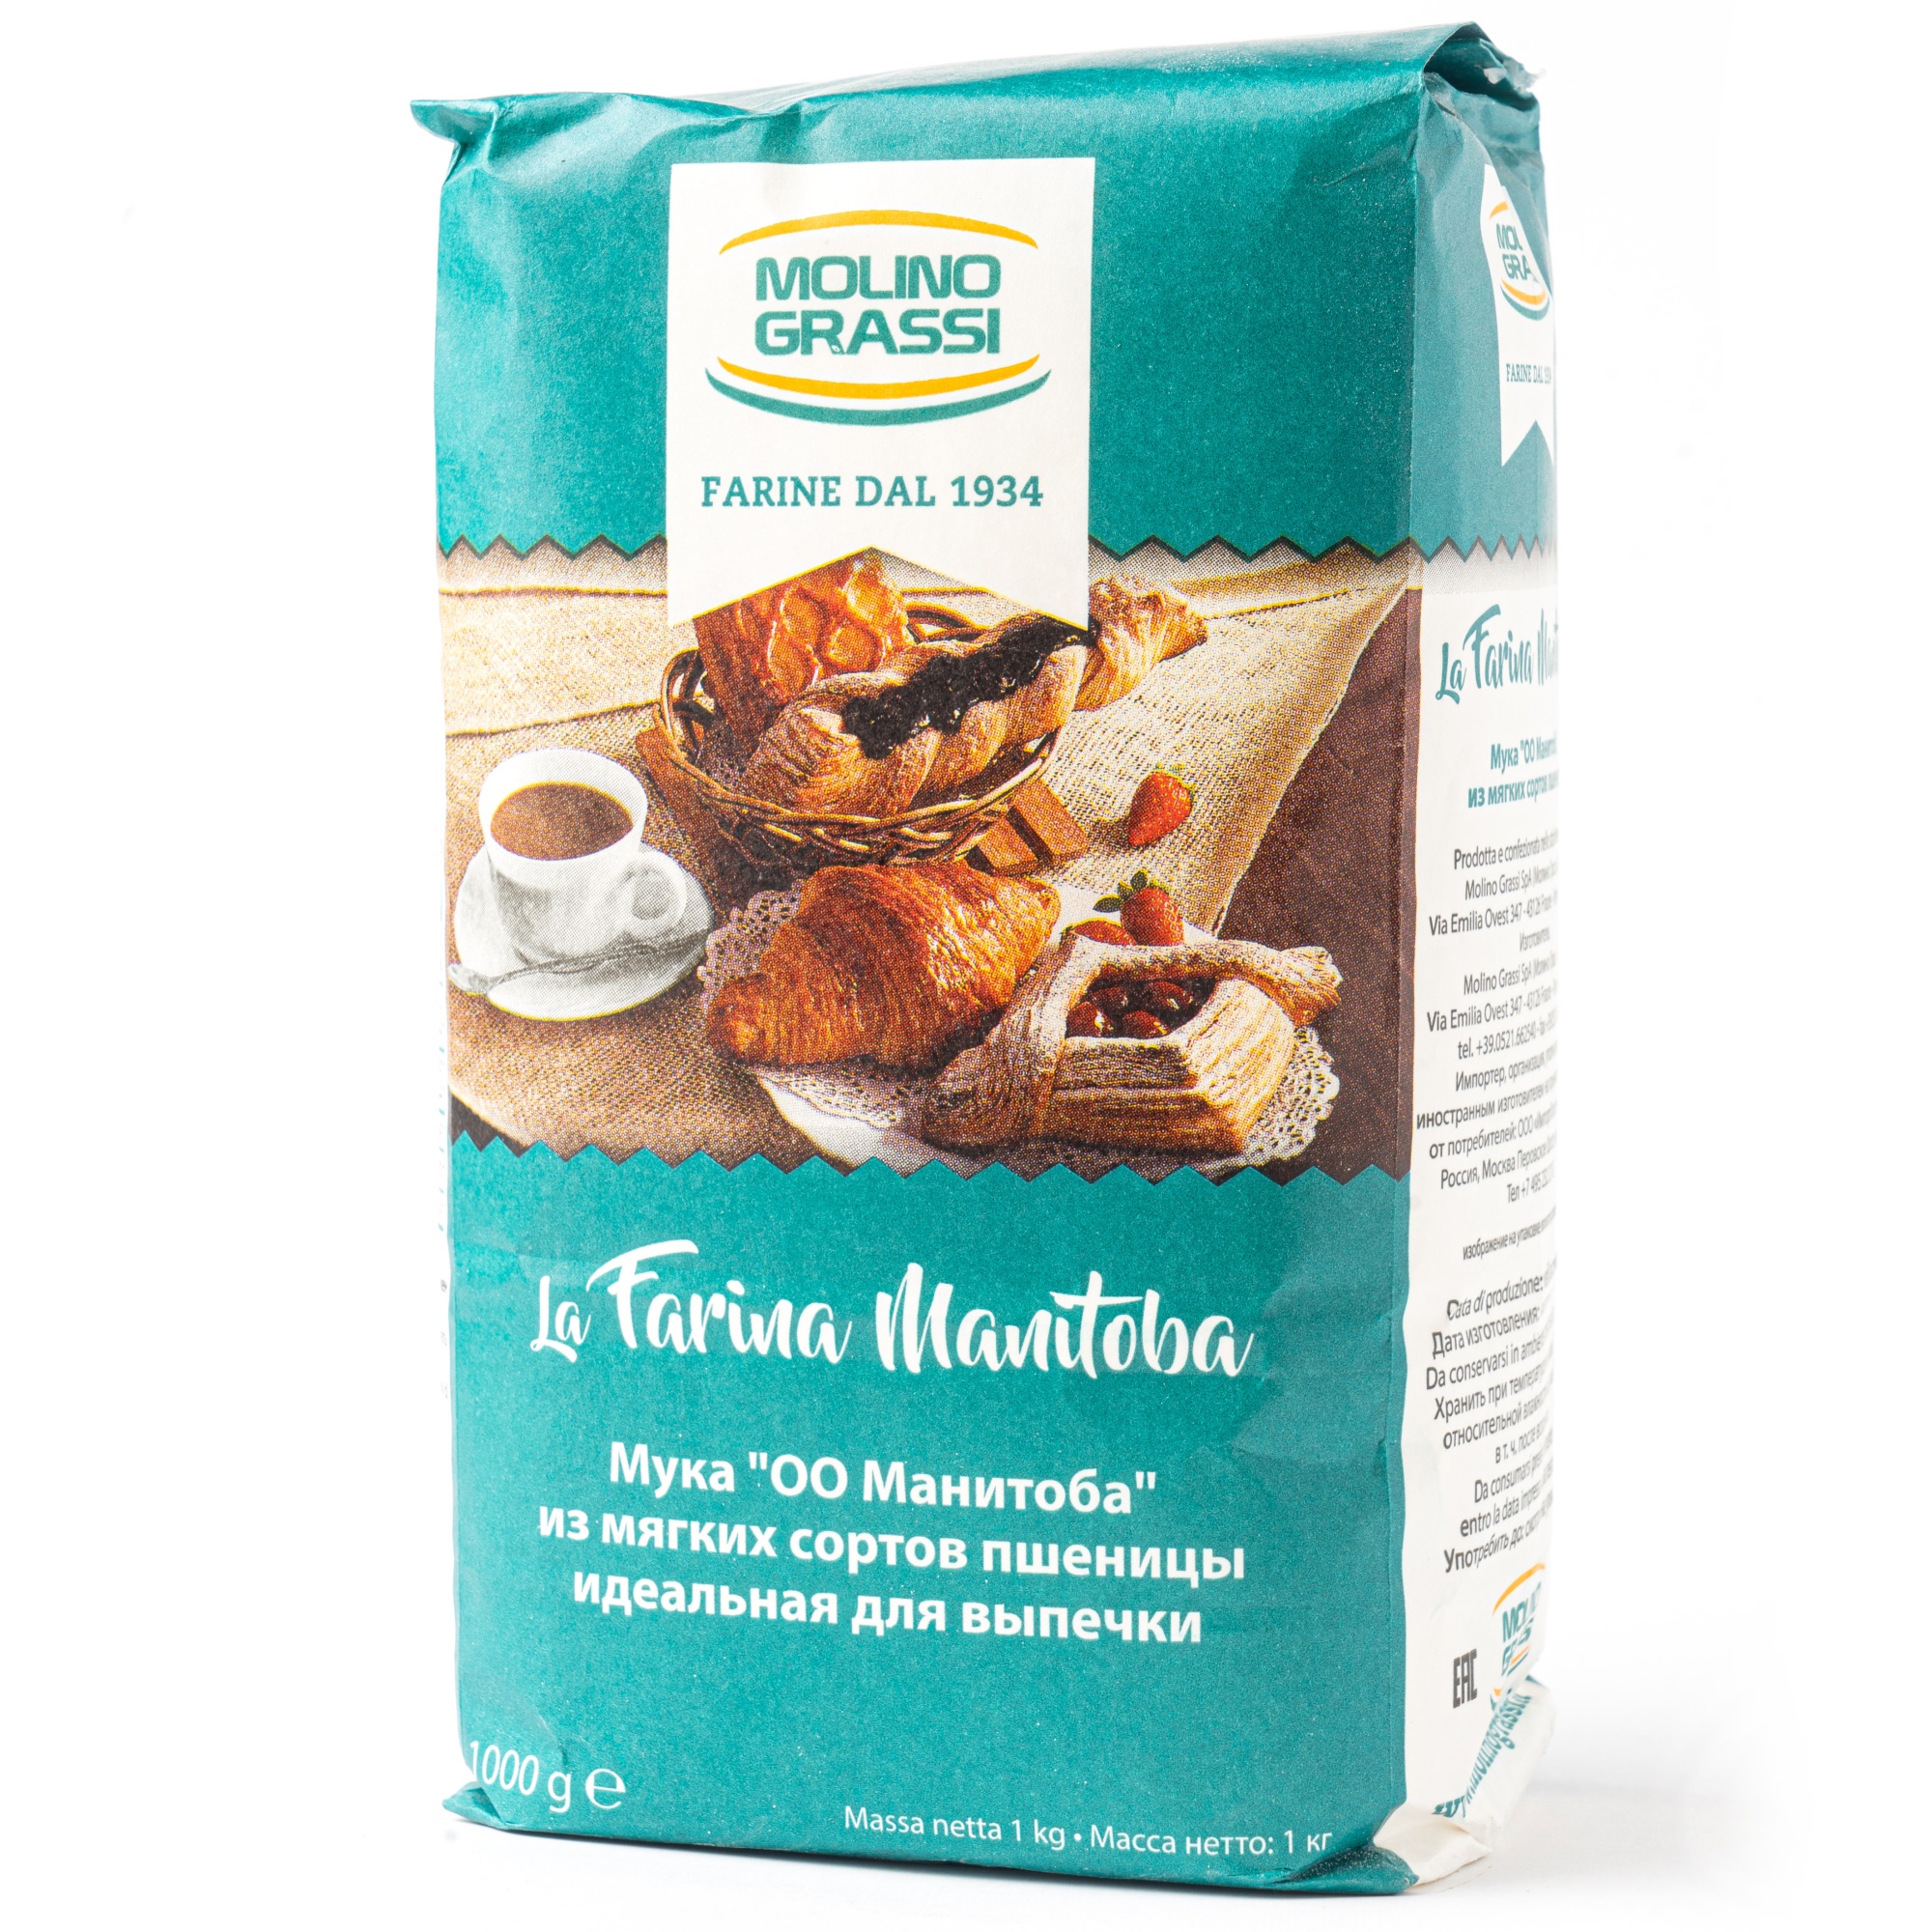 Мука из мягких сортов пшеницы для выпечки Manitoba, Molino Grassi, Италия, 1 кг (повреждена упаковка)  | Фото — Магазин Andy Chef  1